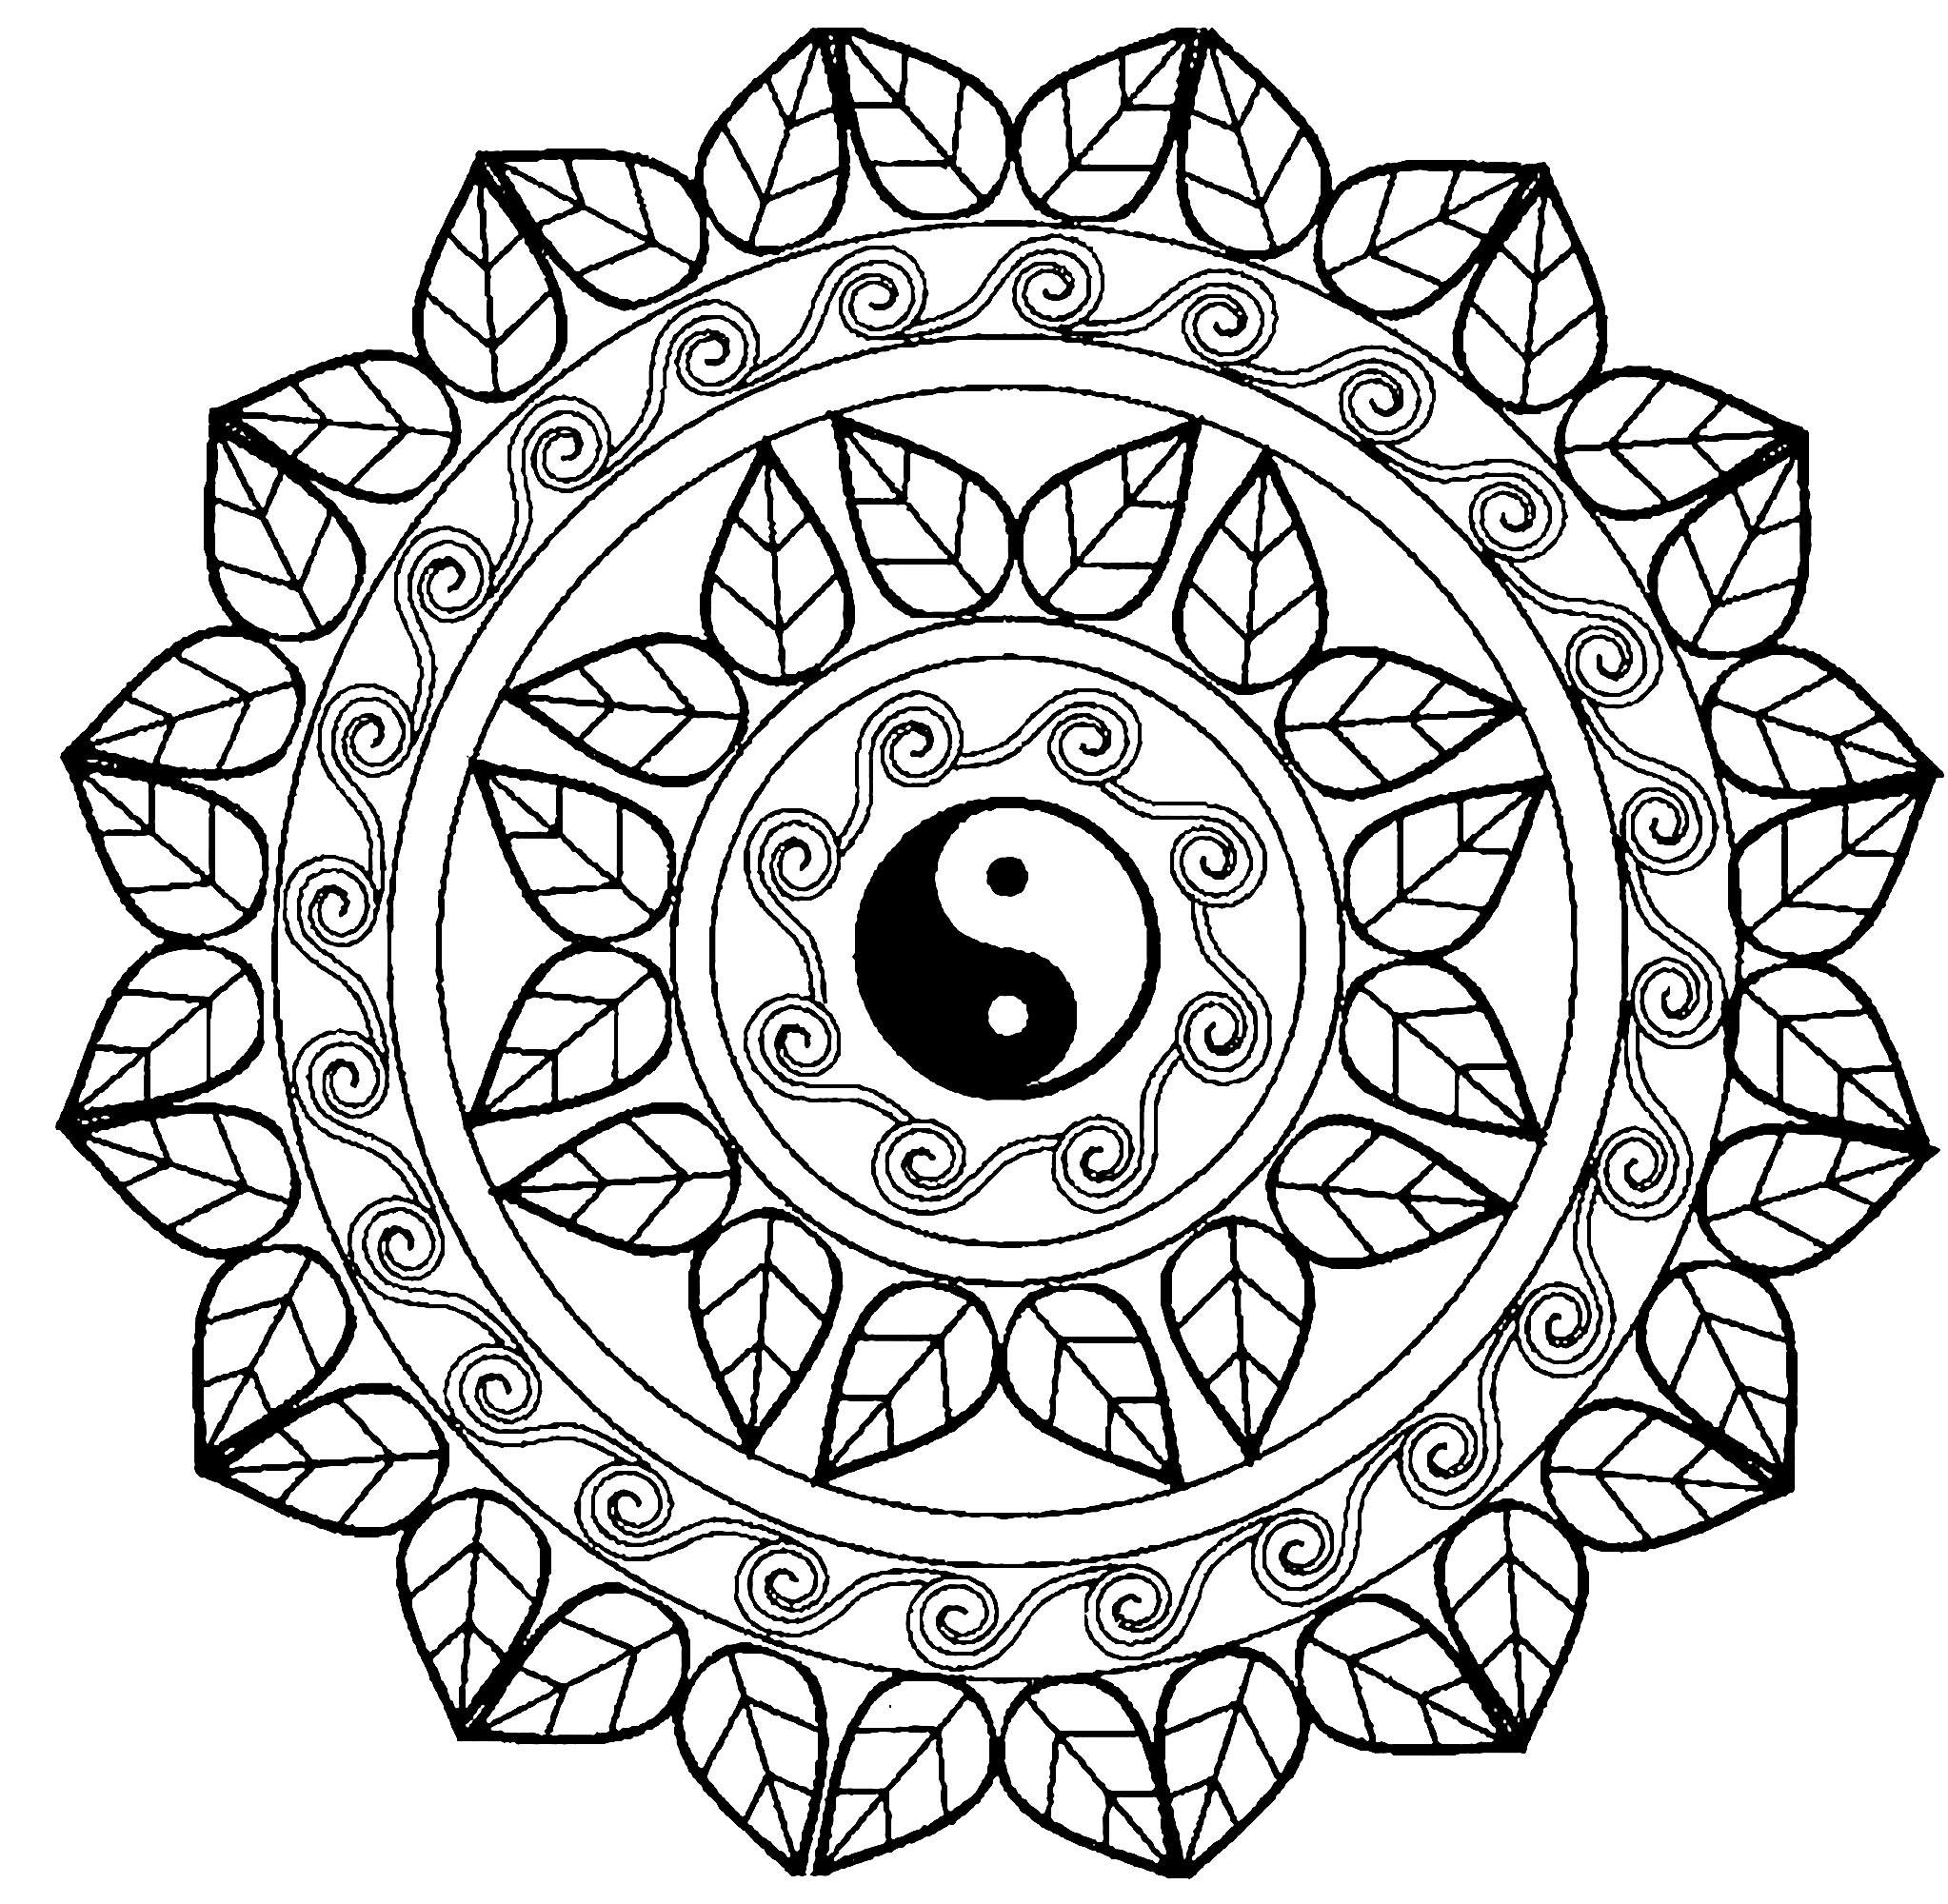 Elige la técnica que prefieras para colorear este exclusivo mandala con el famoso símbolo del Yin y el Yang en el centro. Añade tu alma a este precioso mandala.